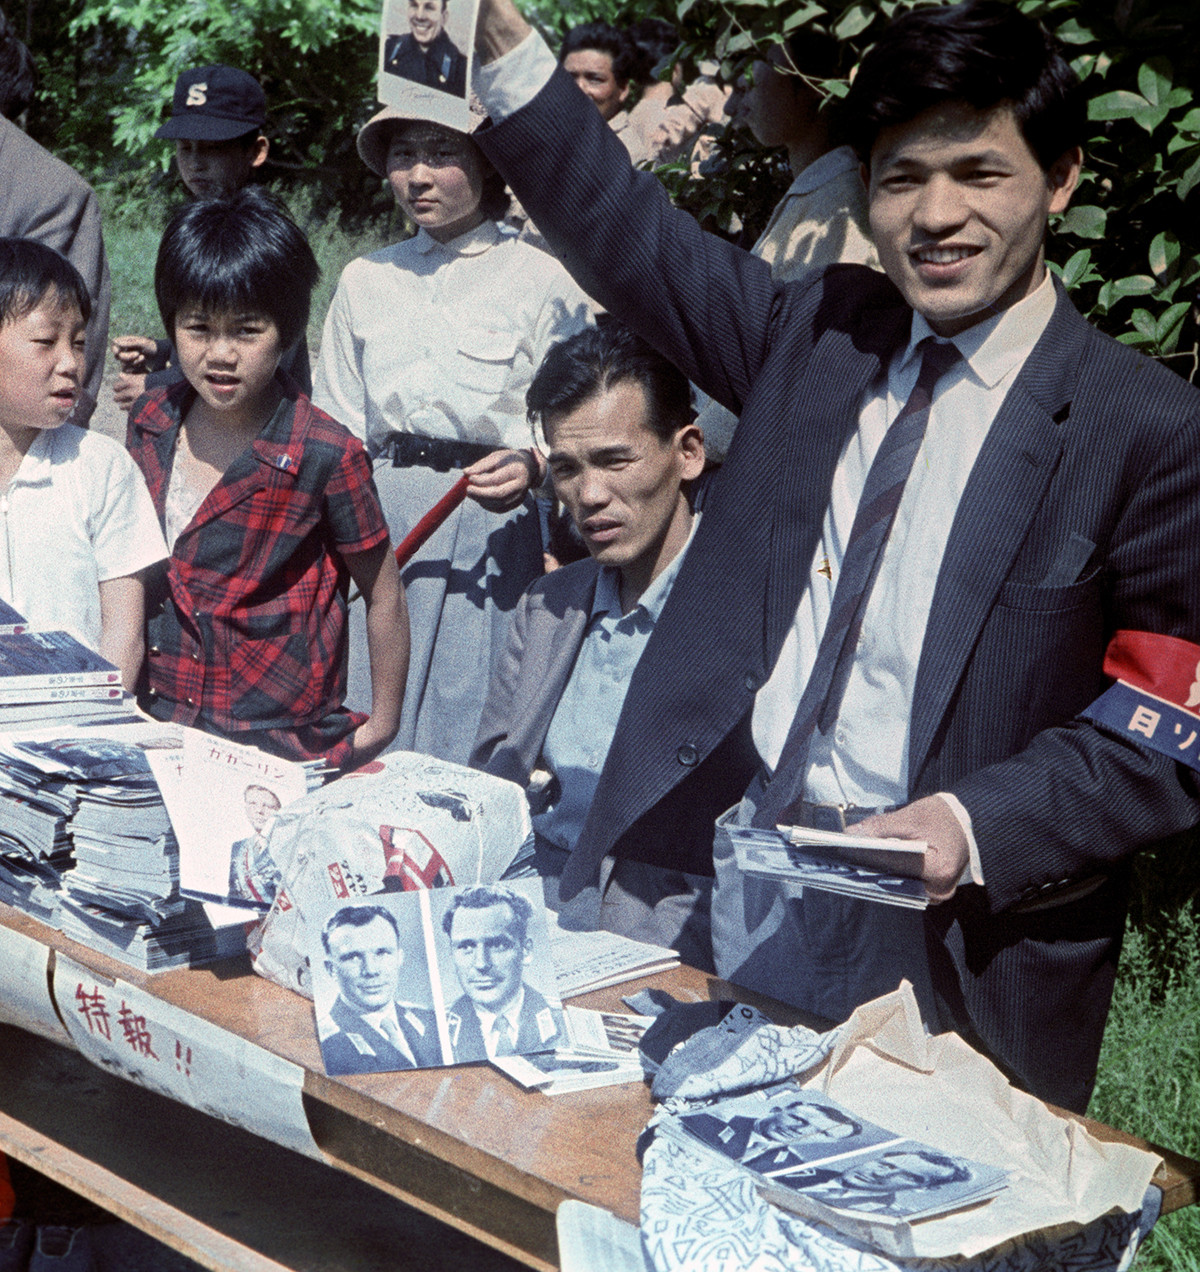 ガガーリンを歓迎する東京の人々。集まった人々にソ連初の宇宙飛行士であるユーリー・ガガーリンとゲルマン・チトフの写真を配るボランティアスタッフ